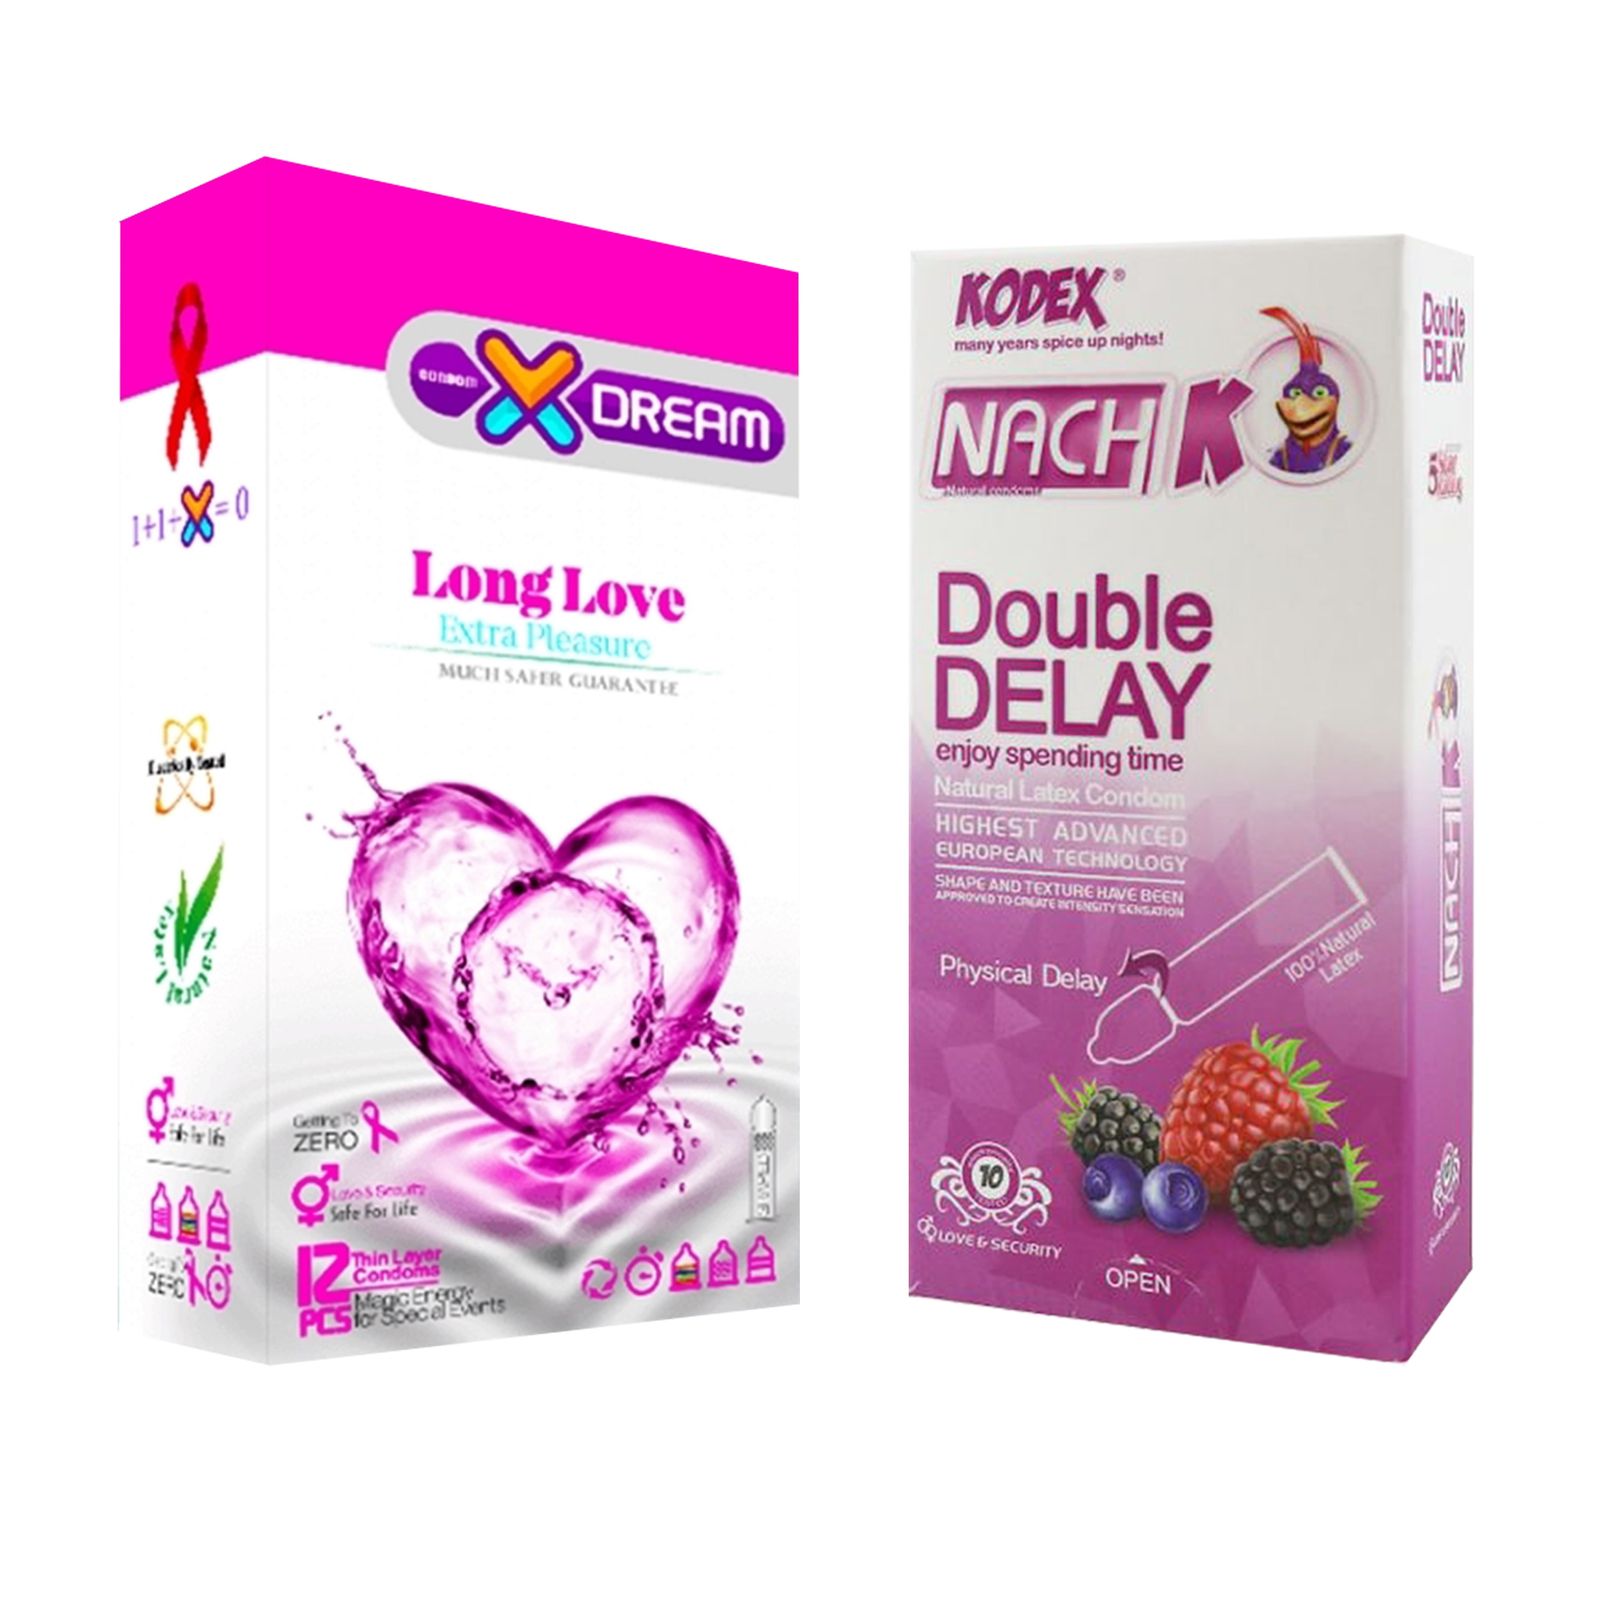 کاندوم ایکس دریم مدل Long Love بسته 12 عددی به همراه کاندوم تاخیری کدکس مدل Double Delay بسته 10 عددی -  - 1